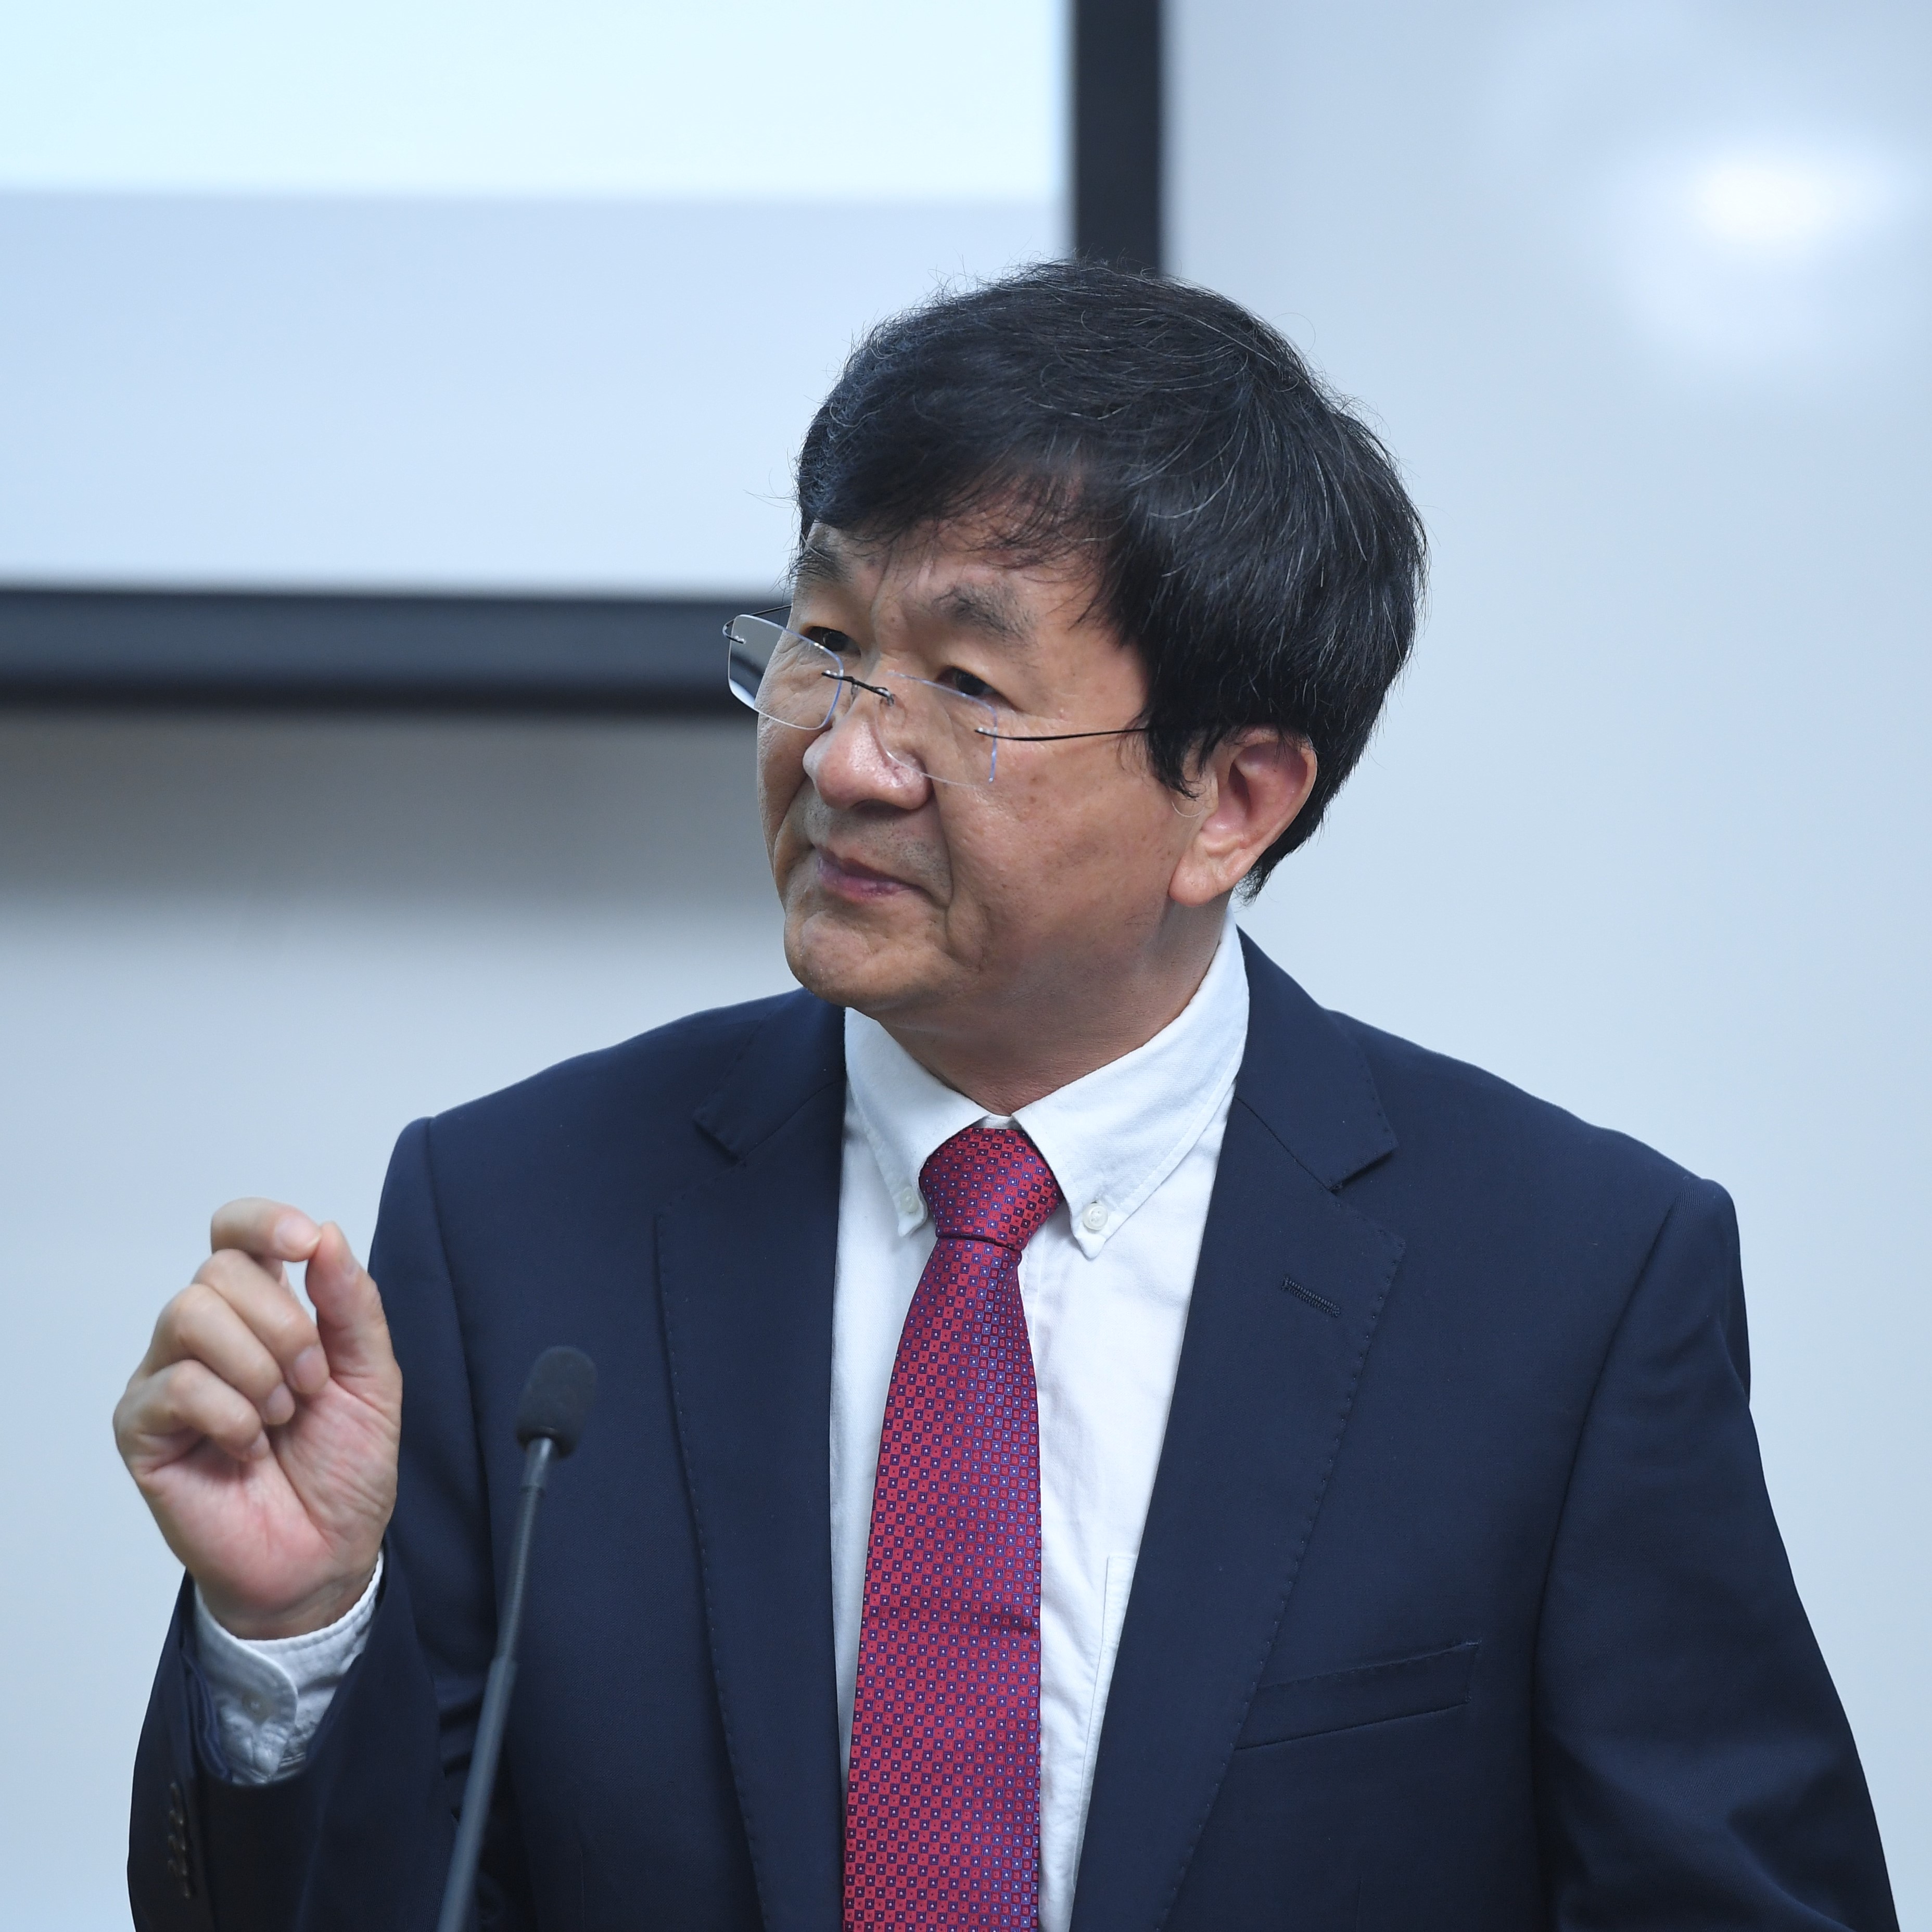 Prof. Jianping WU